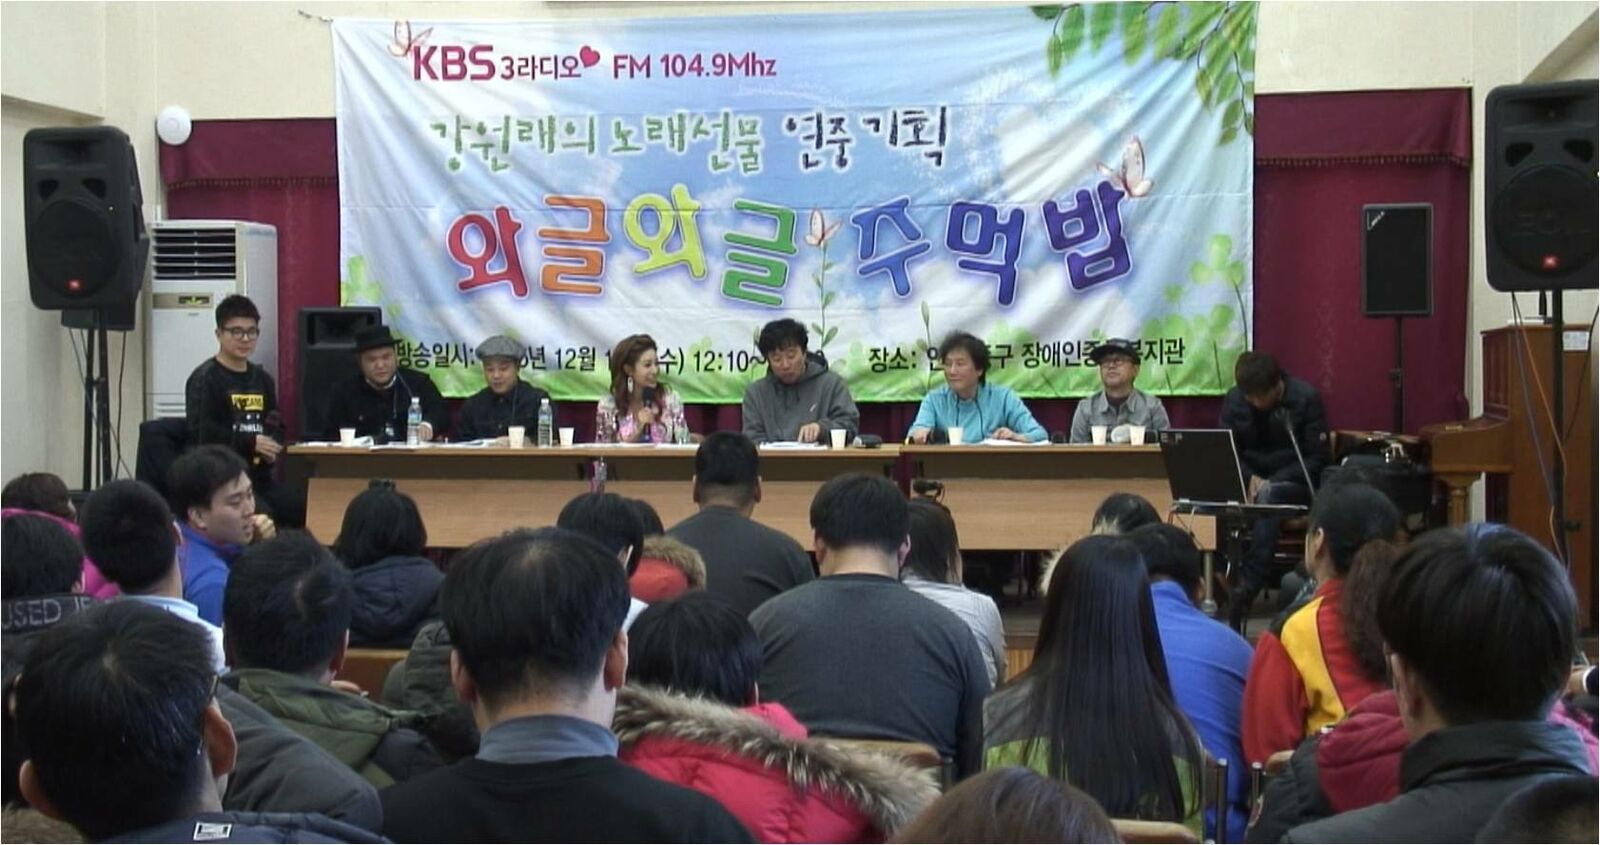 12월 16일(수) 12시 KBS3라디오 강원래의 노래선물 생방송 "와글…